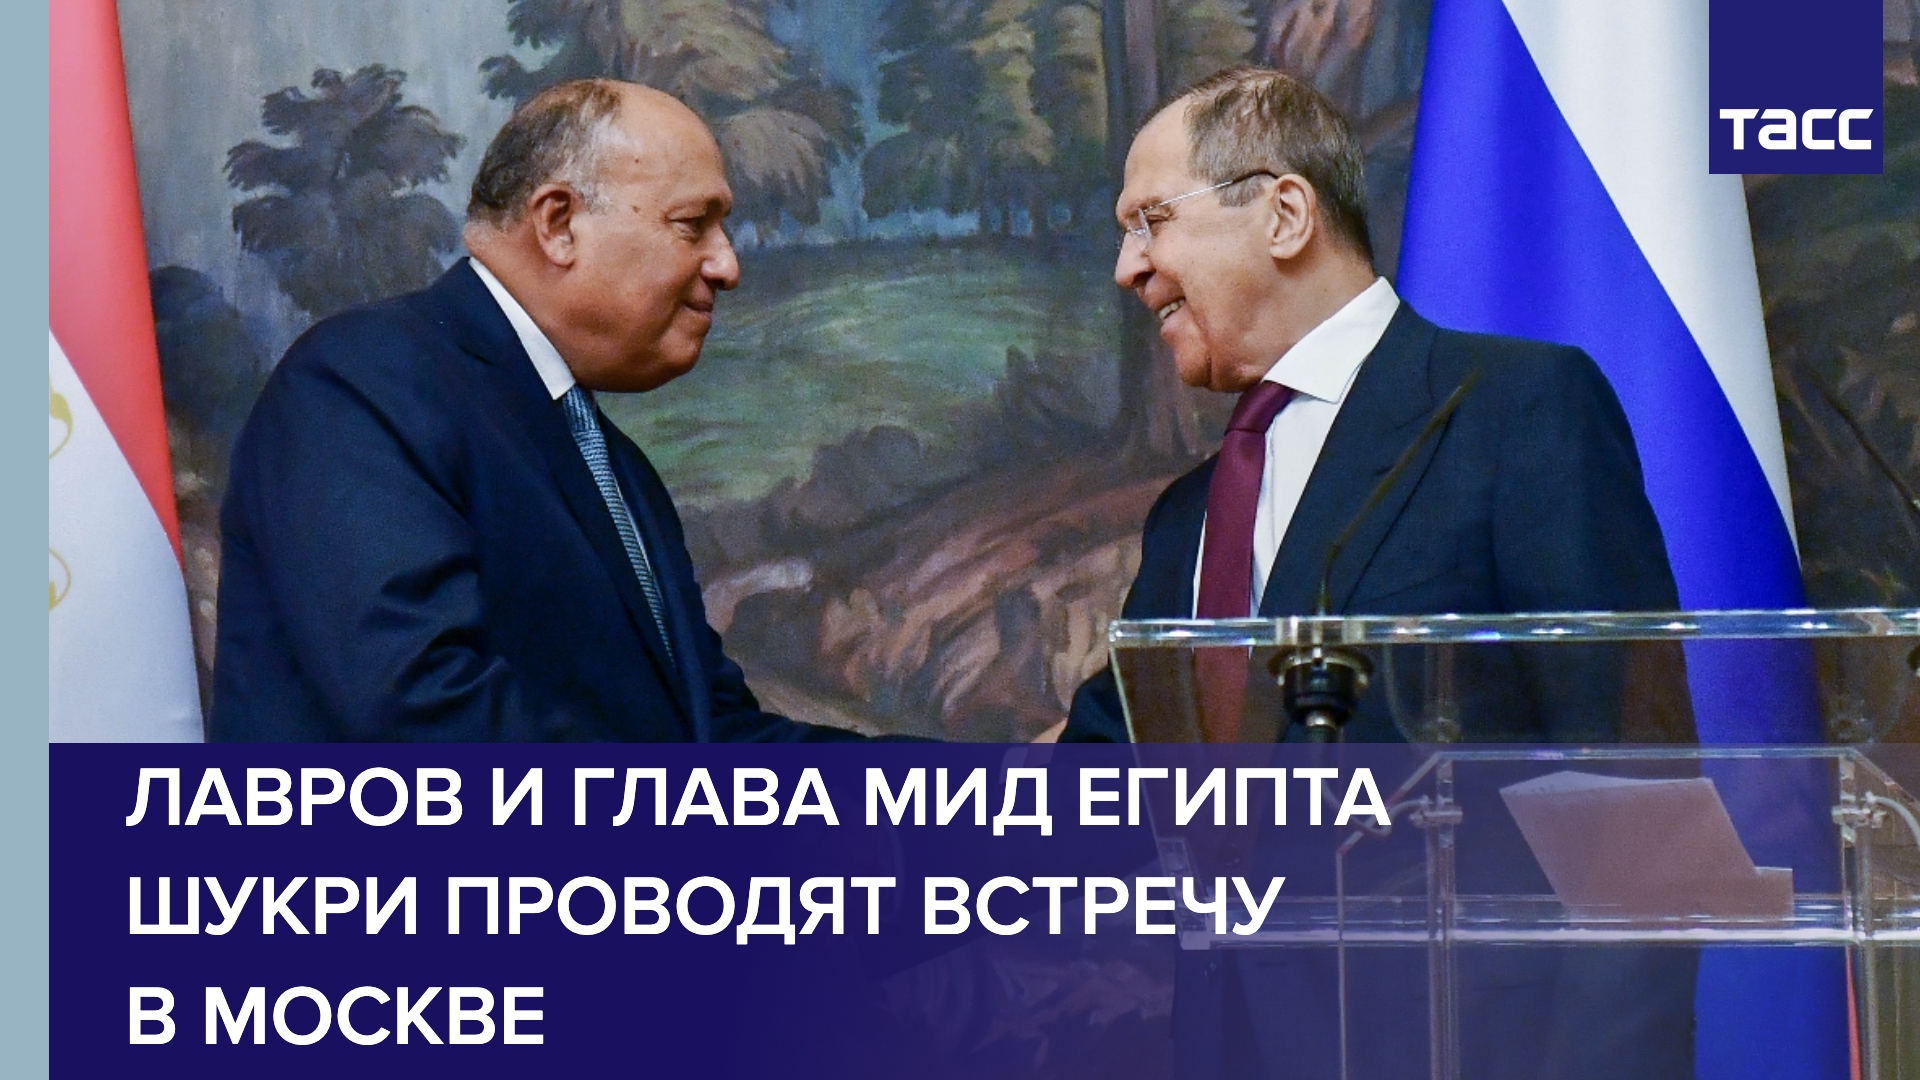 Лавров и глава МИД Египта Шукри проводят встречу в Москве